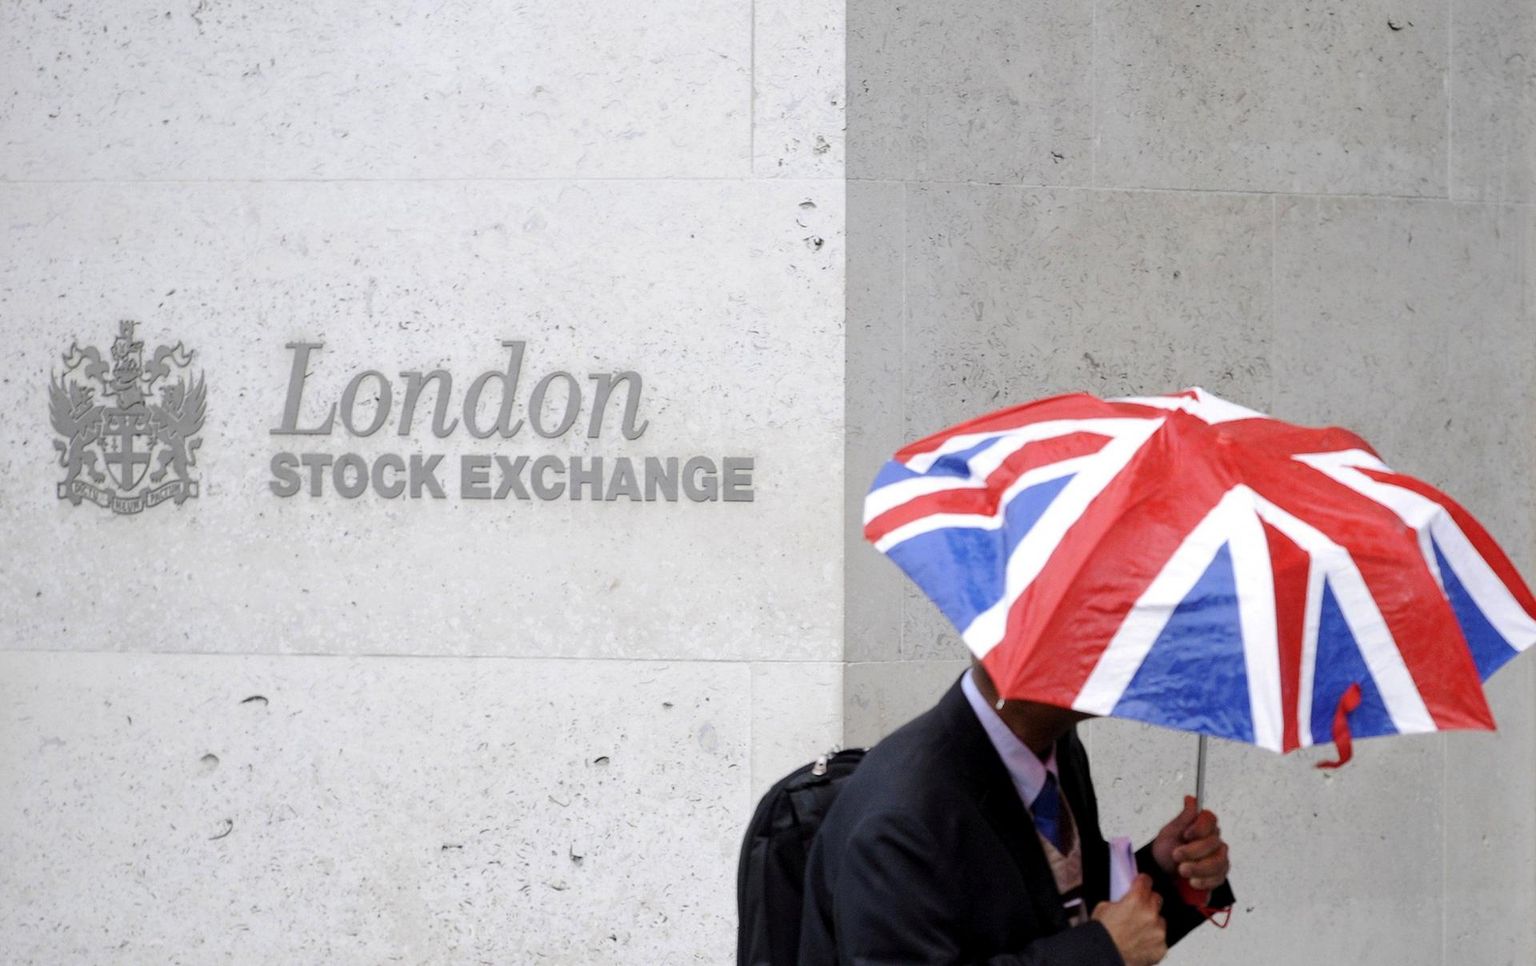 Briti lipu värvides vihmavarjuga mees Londoni börsi ees.